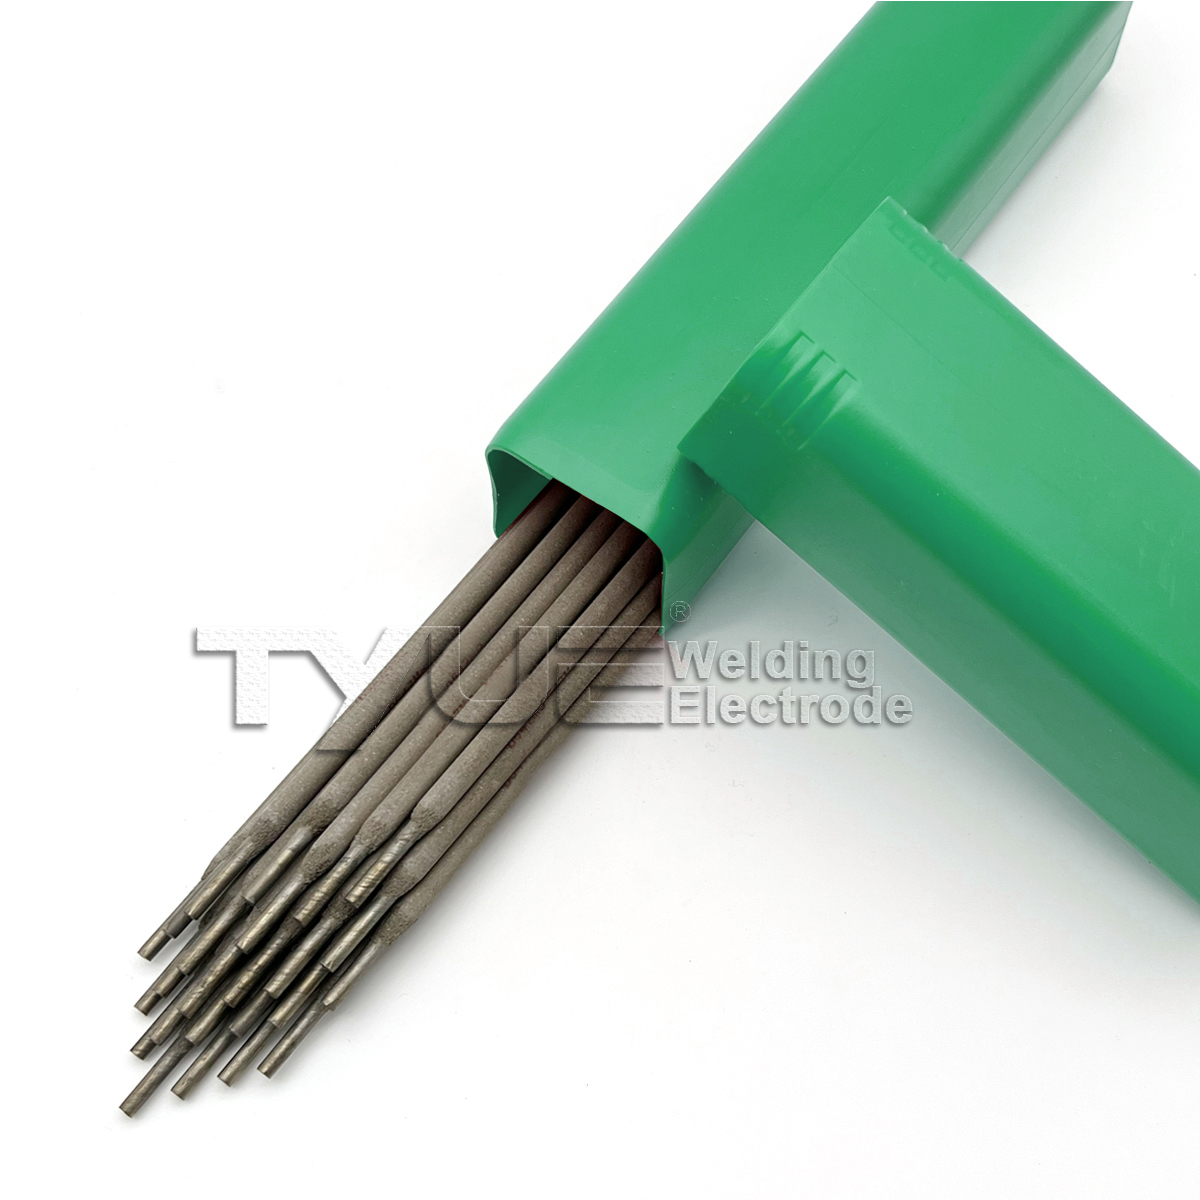 Hardfacing Welding Electrode Surface Welding Rods DIN 8555 (E10-UM-60-GRZ) Stick Electrode untuk Arc Welding